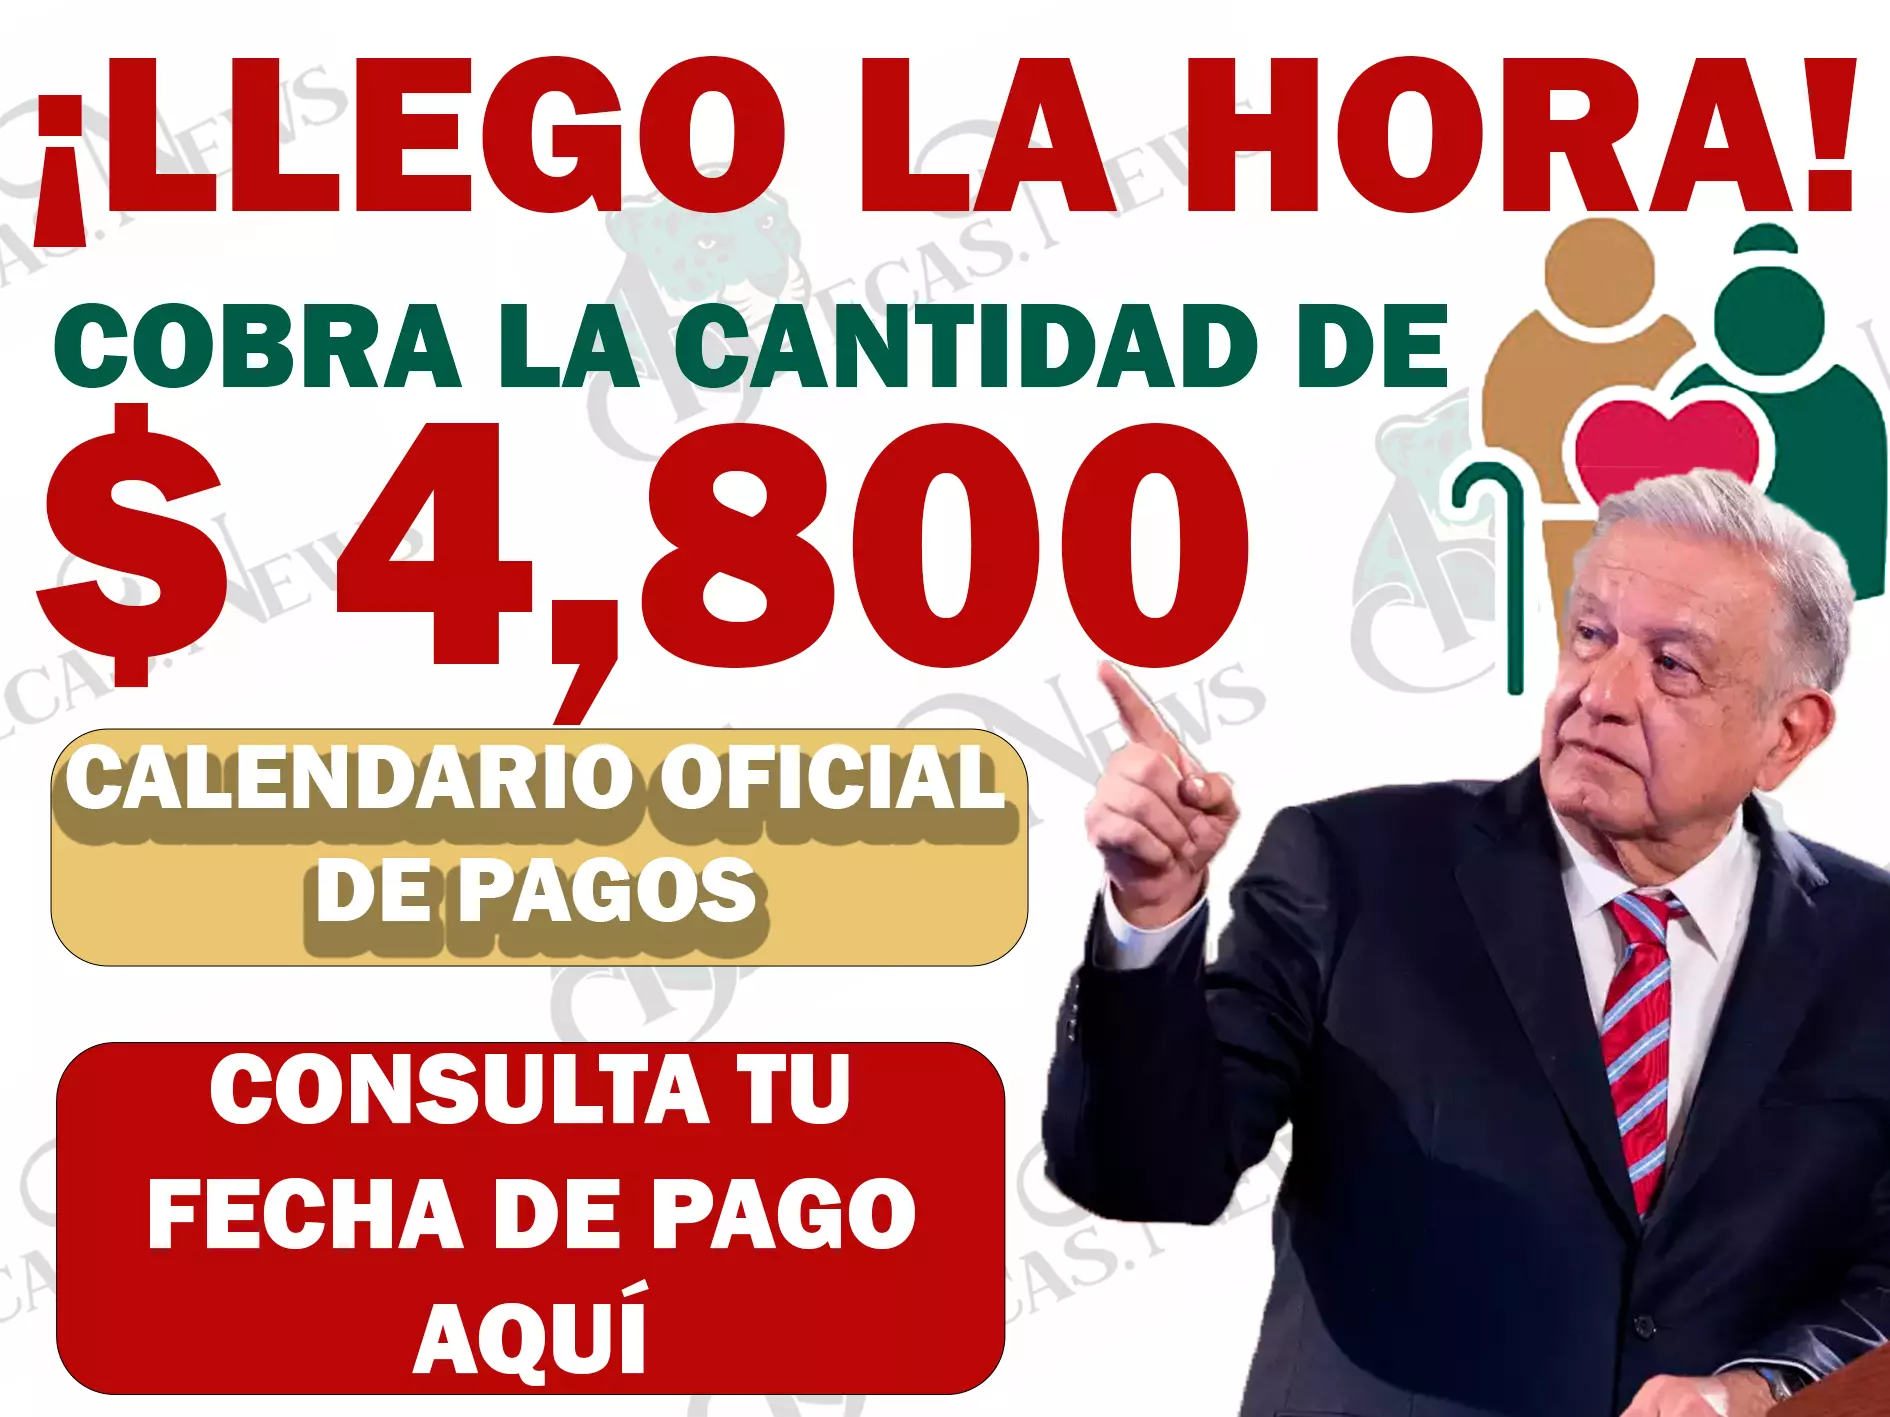 ¡ES HORA DE COBRAR! CONSULTA TU FECHA DE PAGO Y RECIBE $ 4,800 PESOS|PENSIÓN BIENESTAR